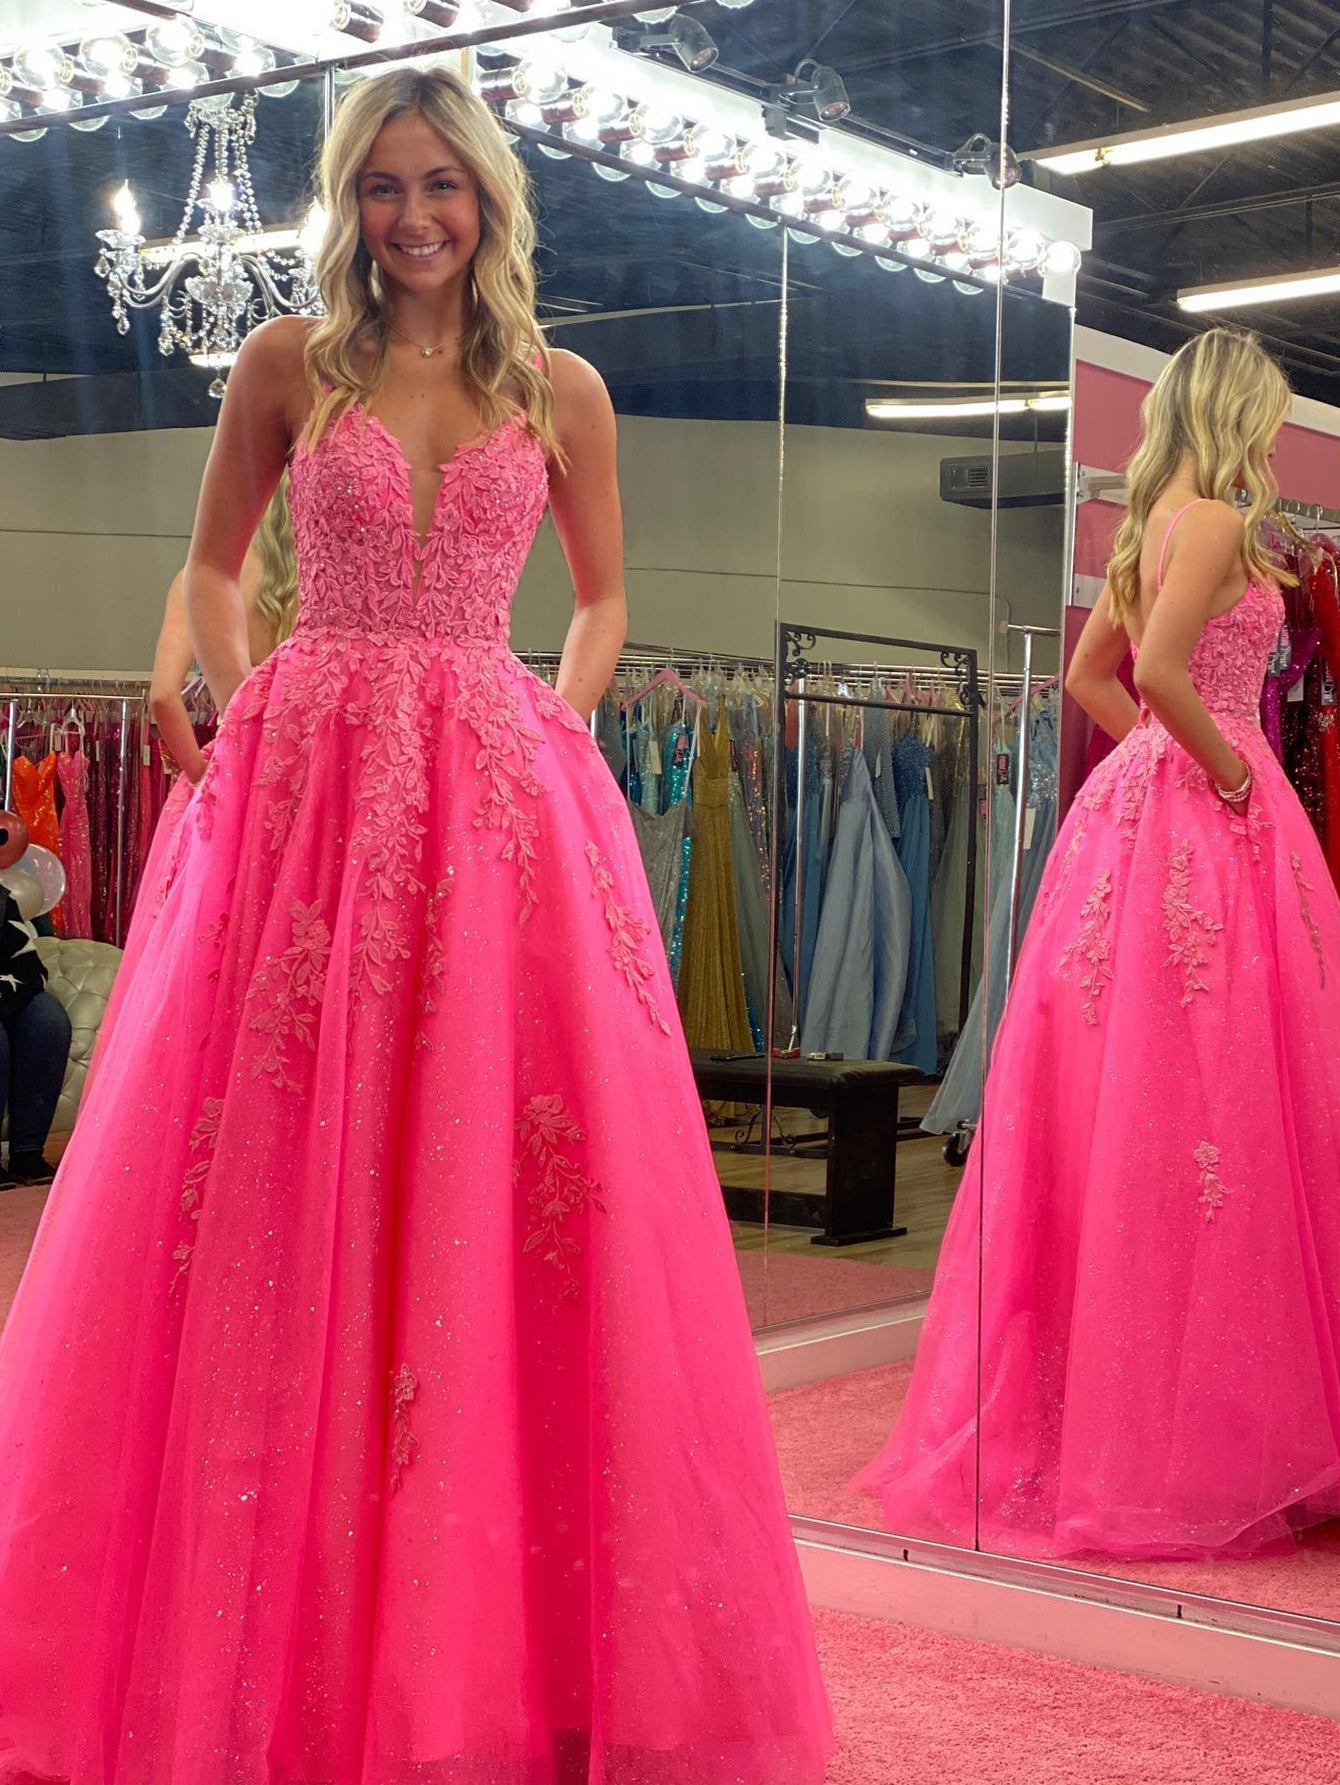 Angelina |V Neck Pink A Line Lace Long Prom Dress